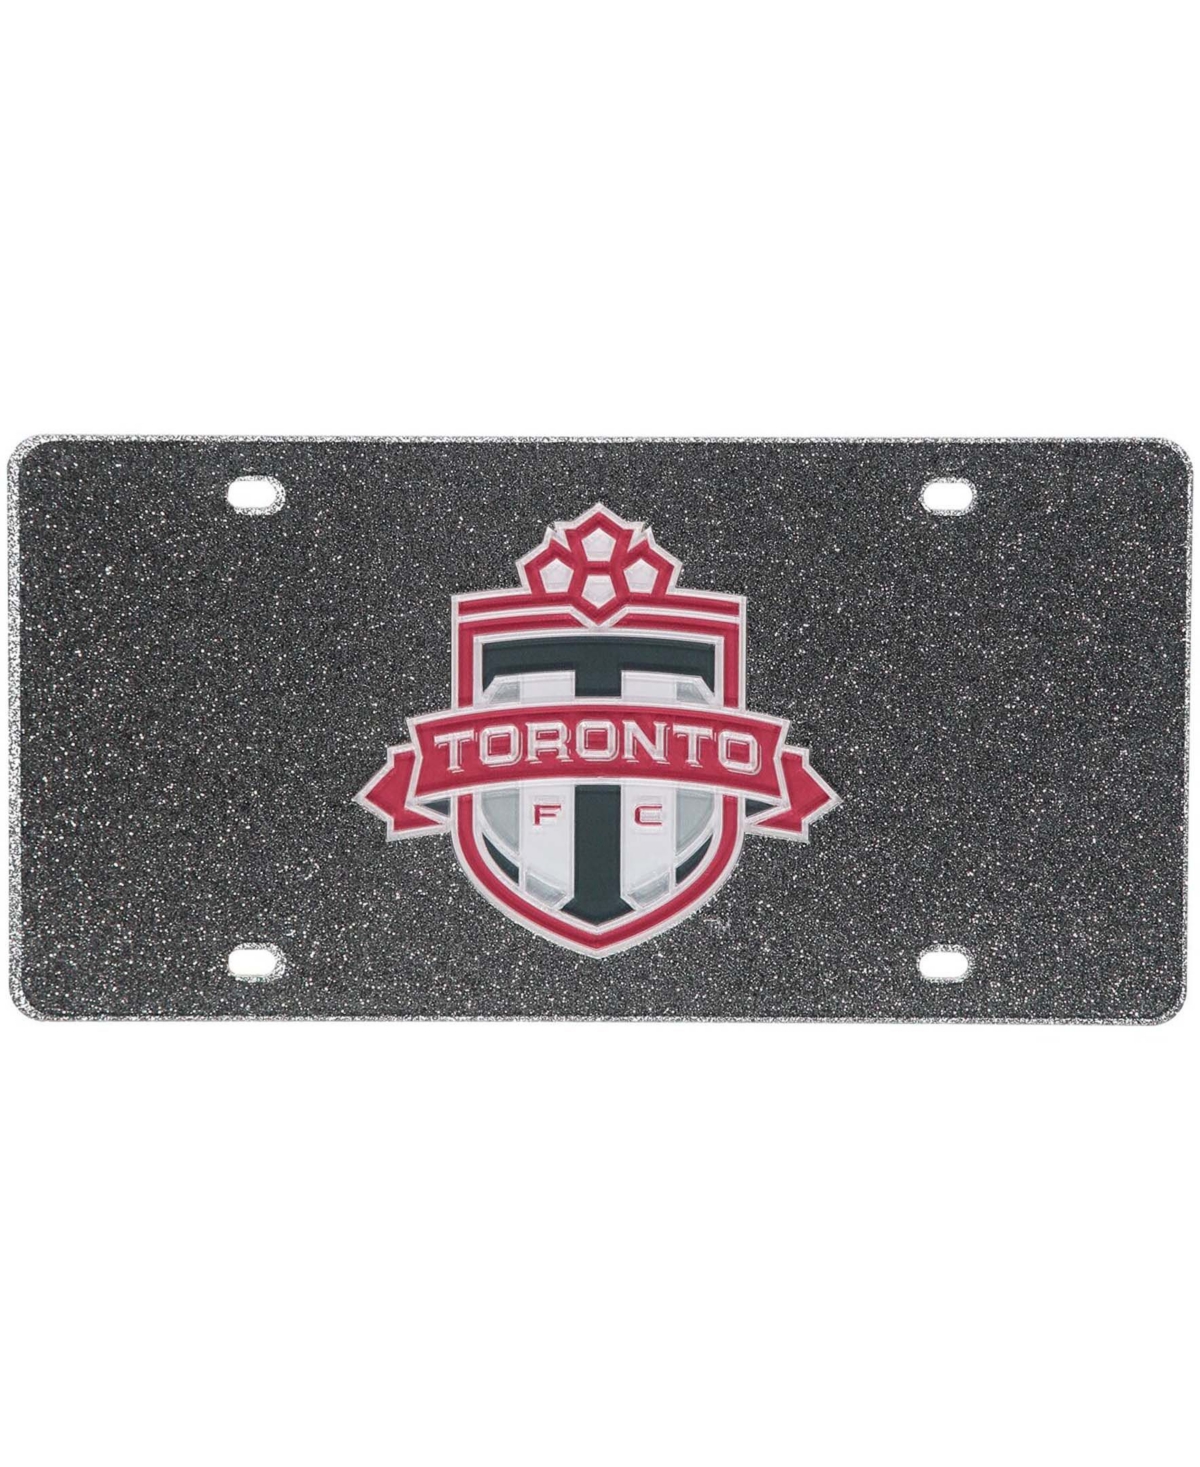 Multi Toronto Fc Acrylic Glitter License Plate - Multi